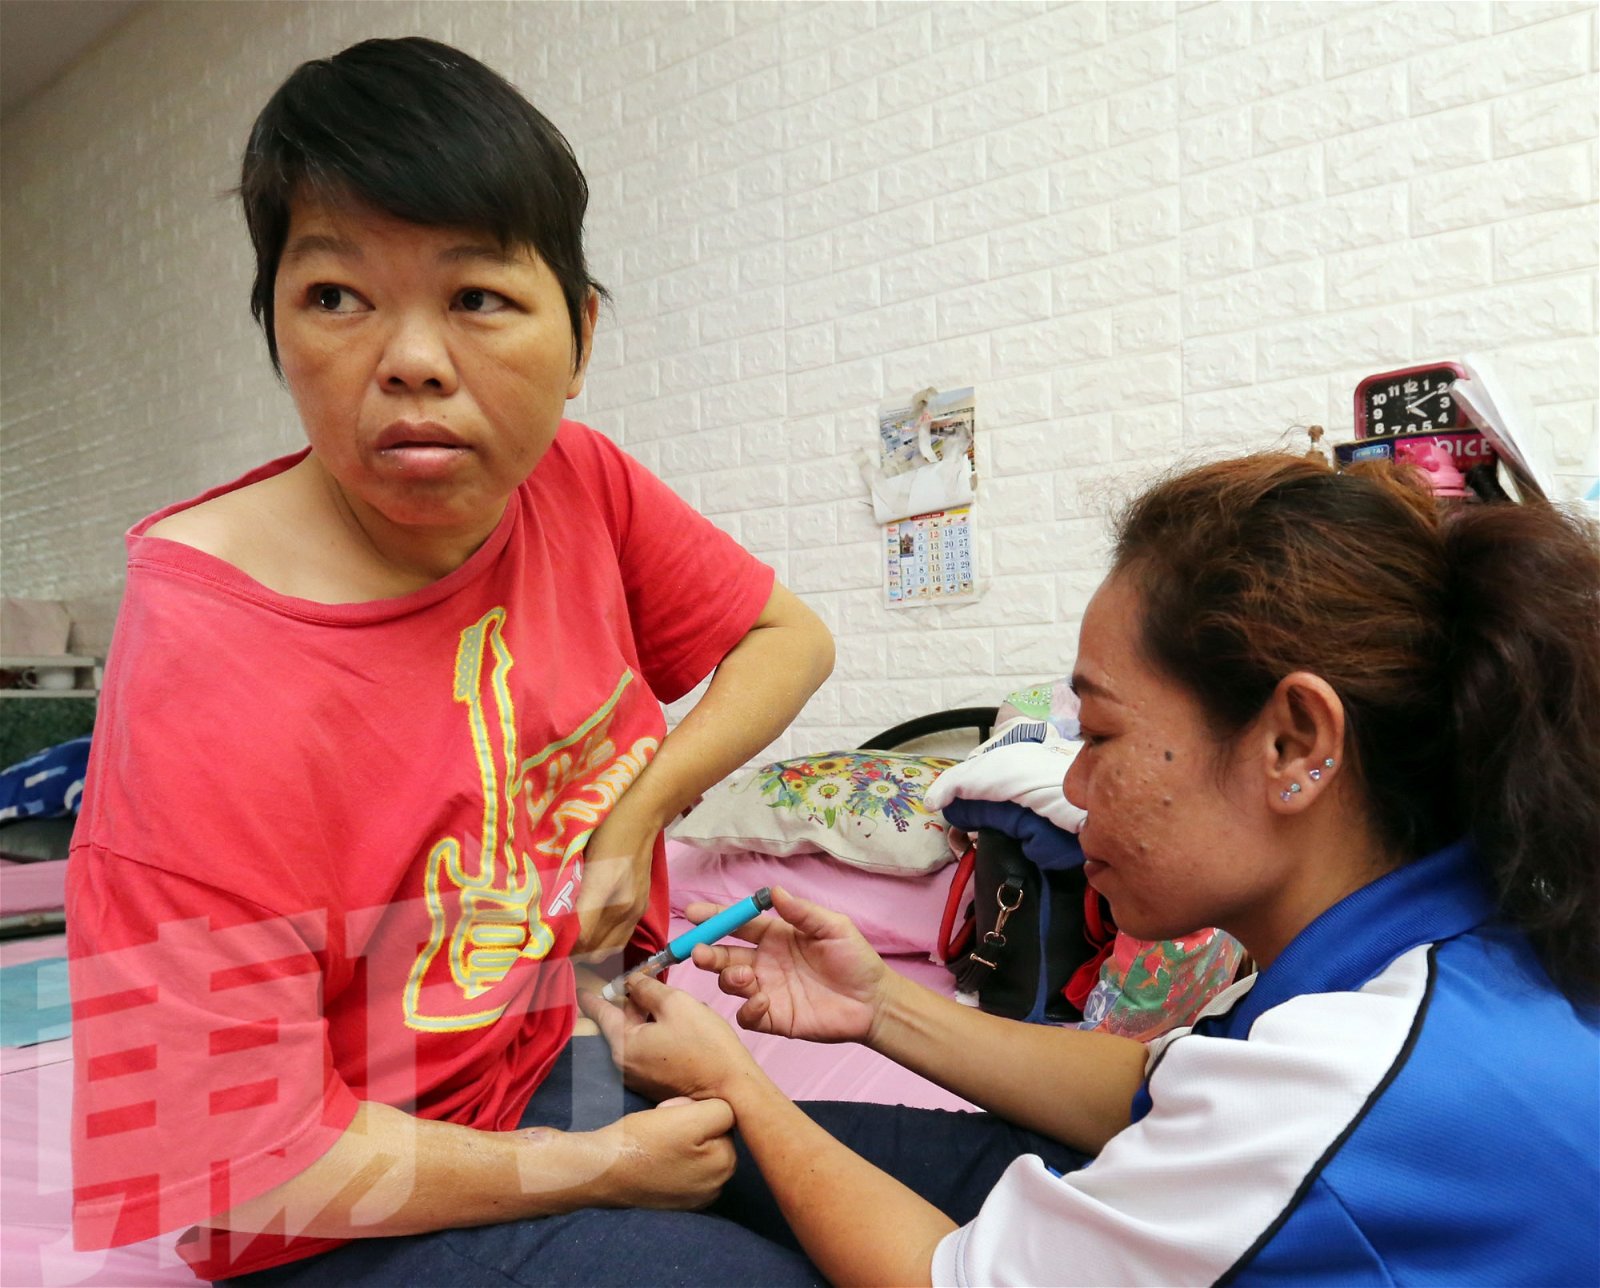 护理员每天早午两次帮王桂香（左）在肚子上打胰岛素，避免血糖过高。（摄影：刘维杰）